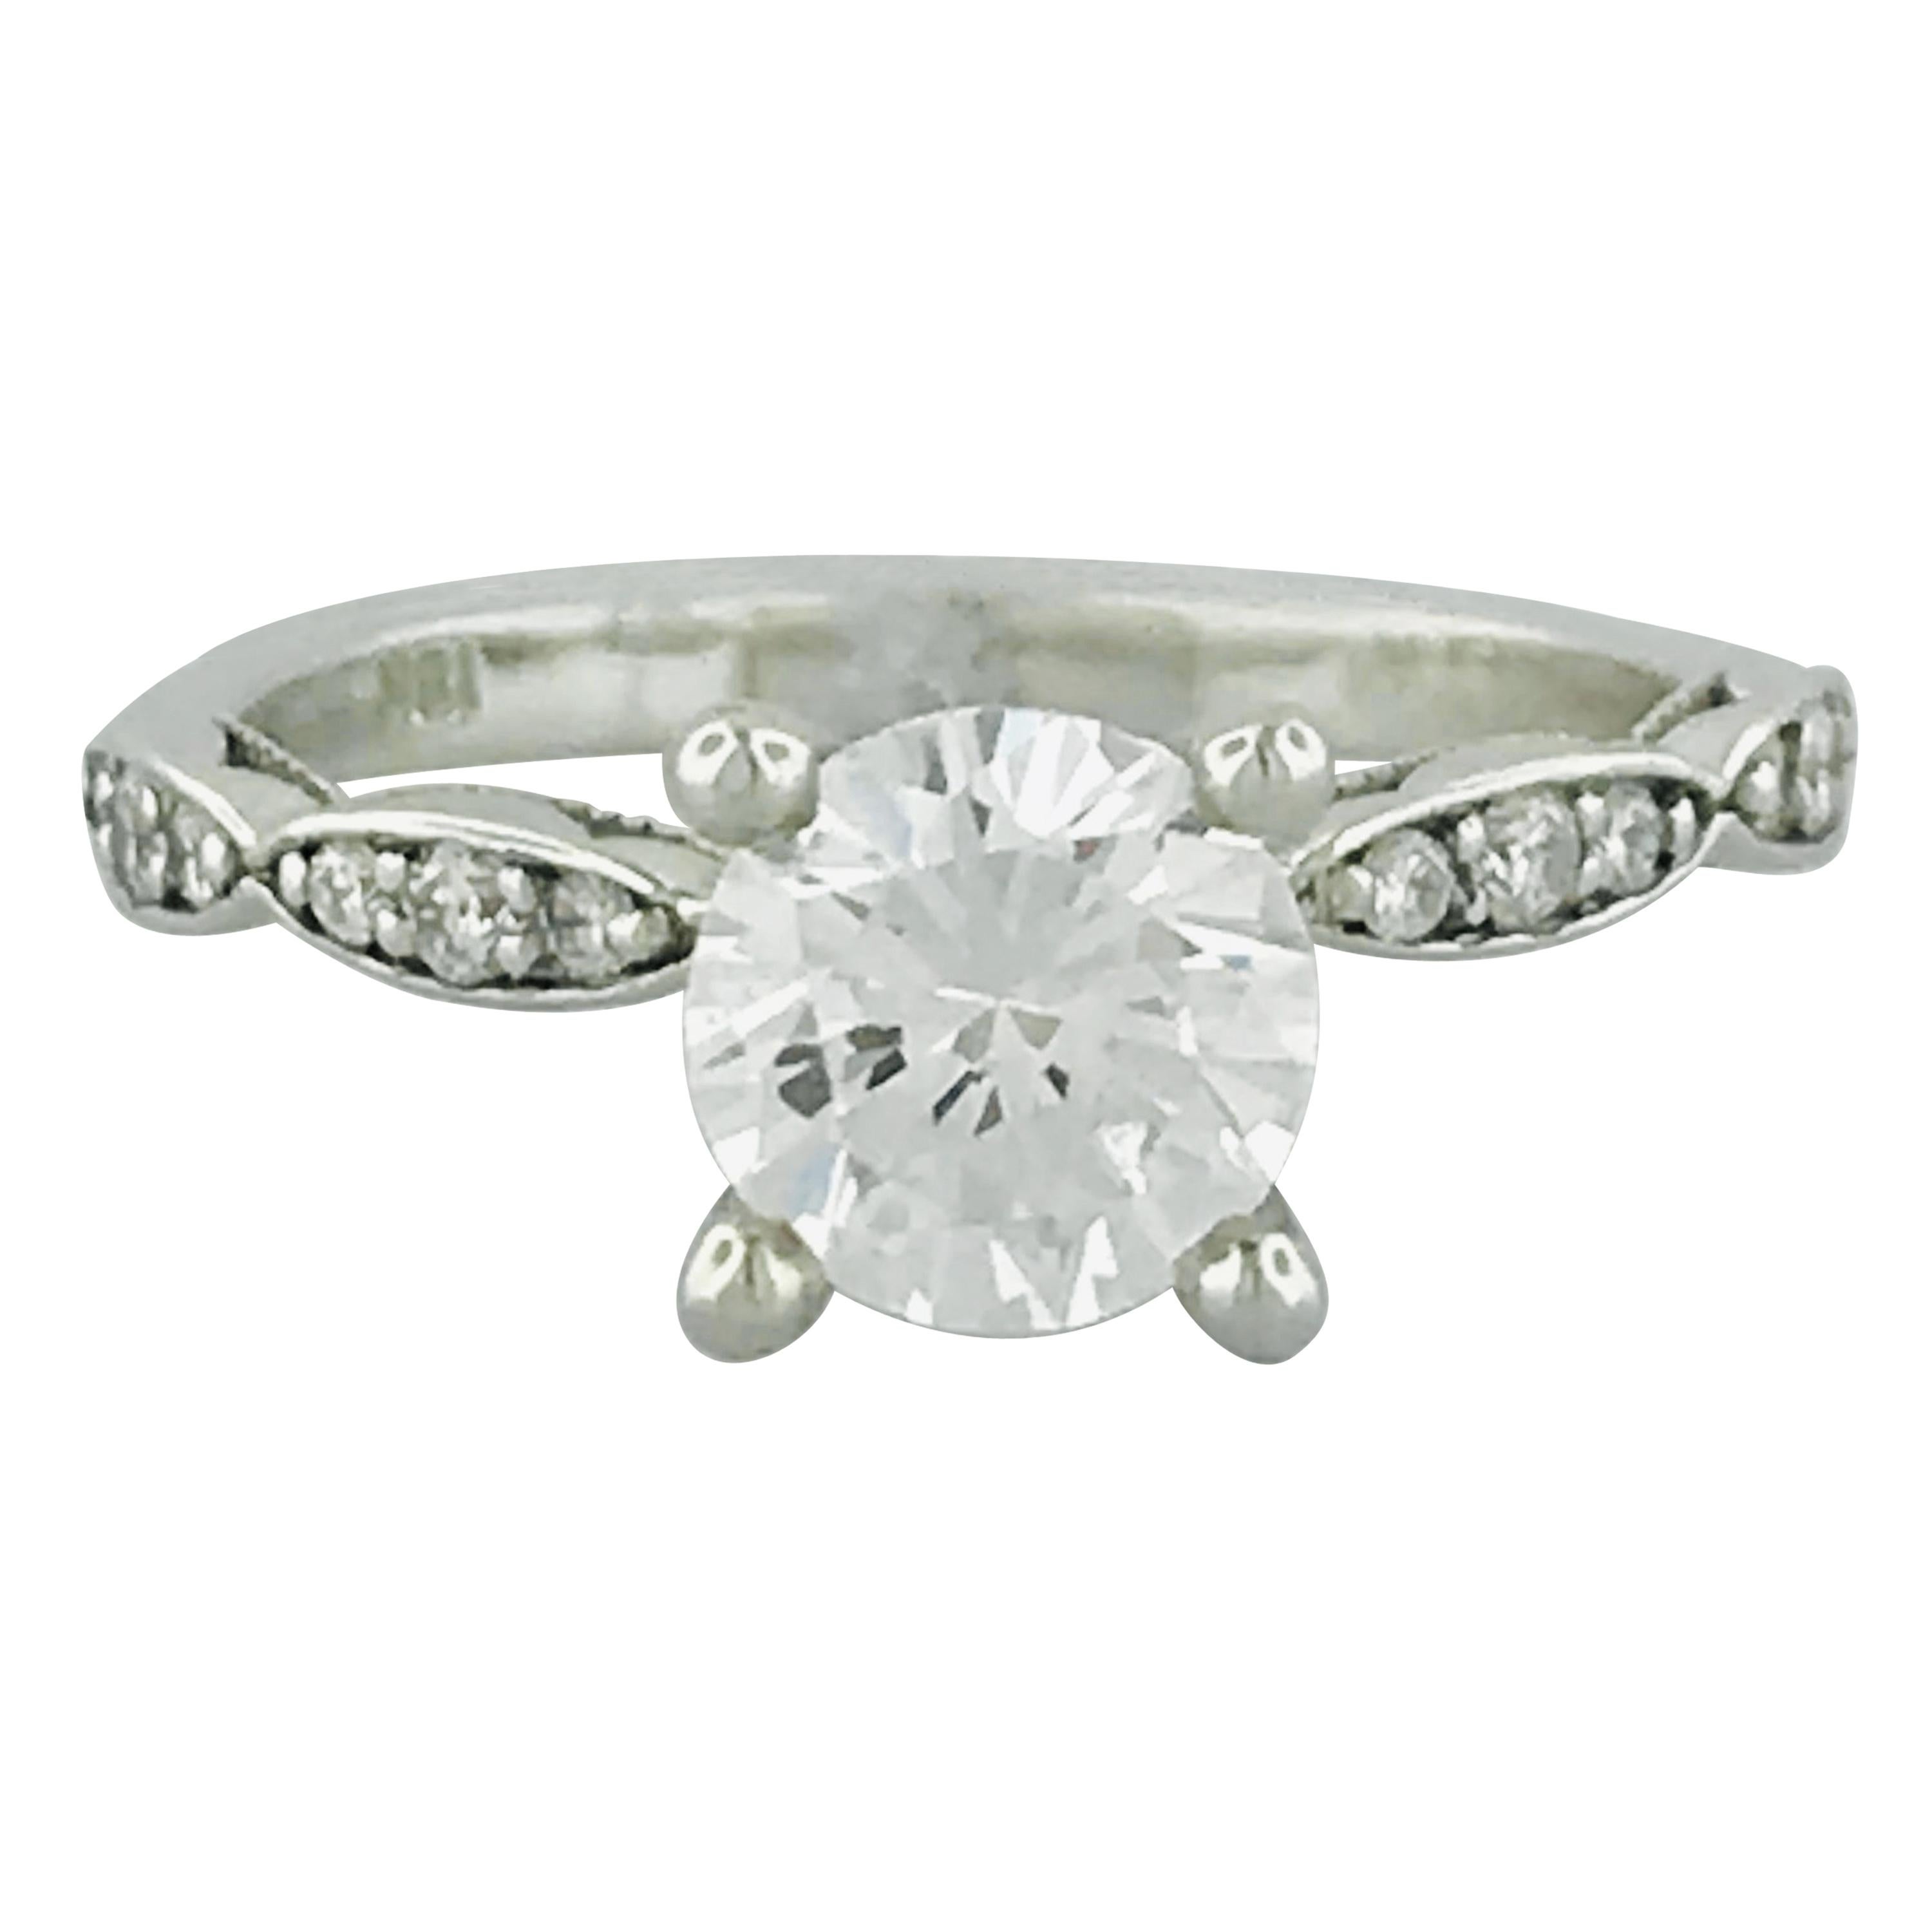 Tacori 1.00 Carat GIA Round Diamond in 18 Karat White Gold Engagement Ring